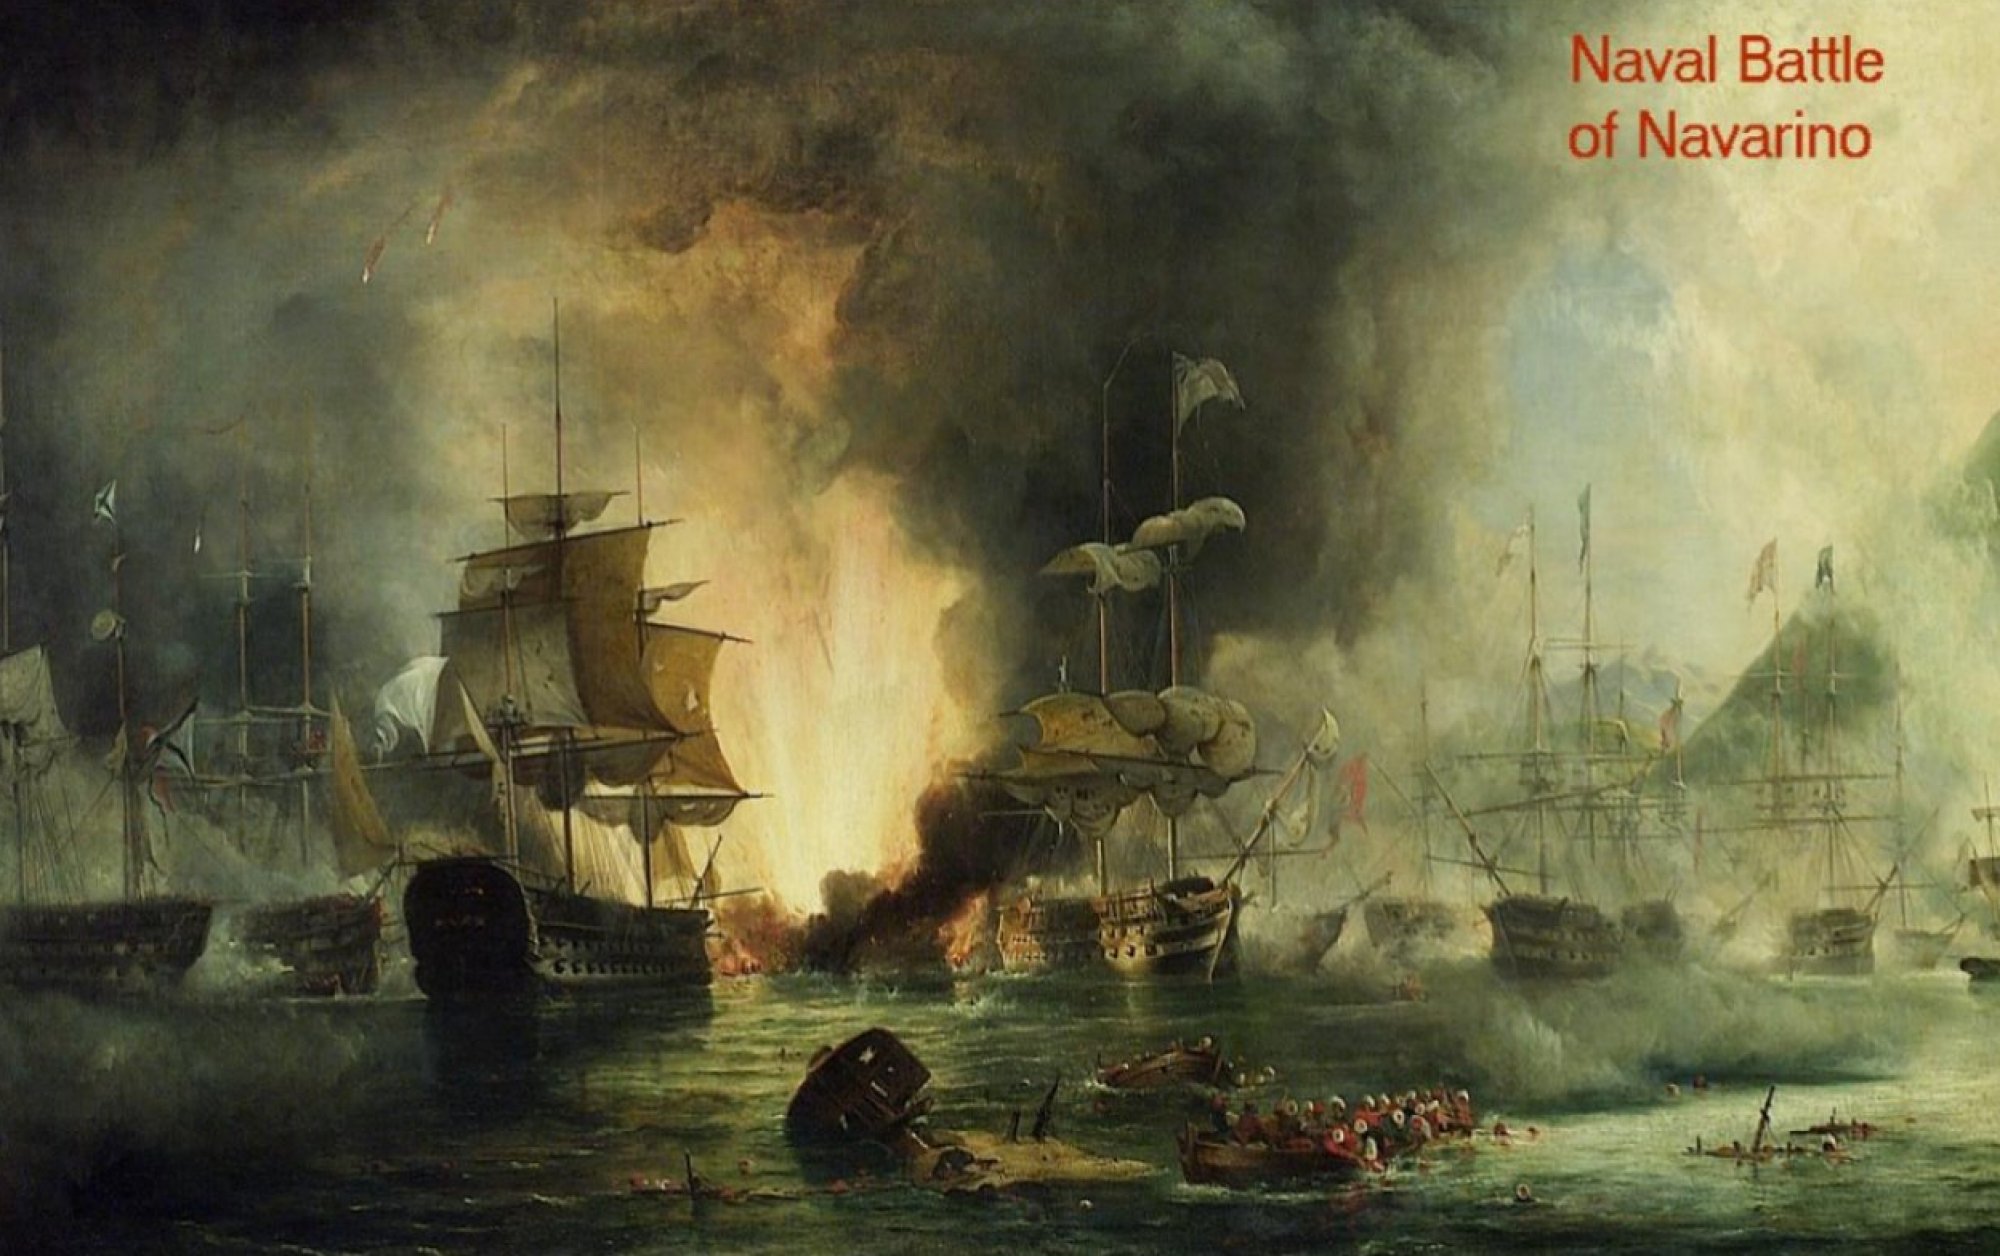 Naval battle of Navarino